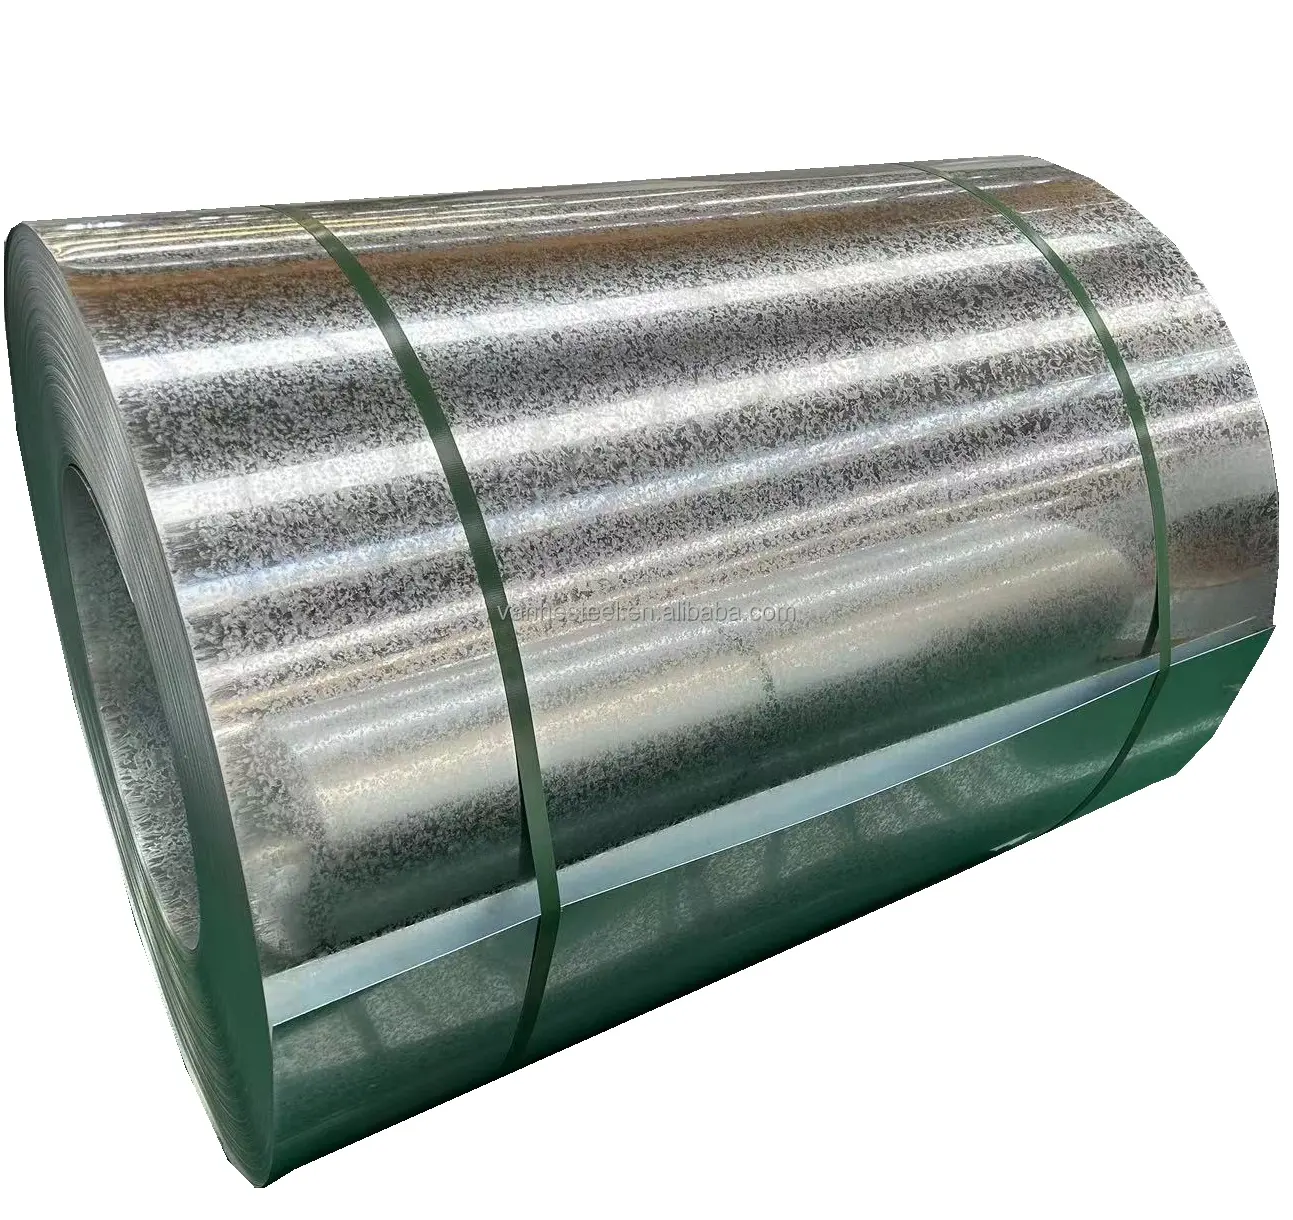 Bobina d'acciaio zincata a caldo dell'acciaio al carbonio dell'acciaio laminato a caldo dell'acciaio principale Ss400,Q235,Q345 sfhc caldo